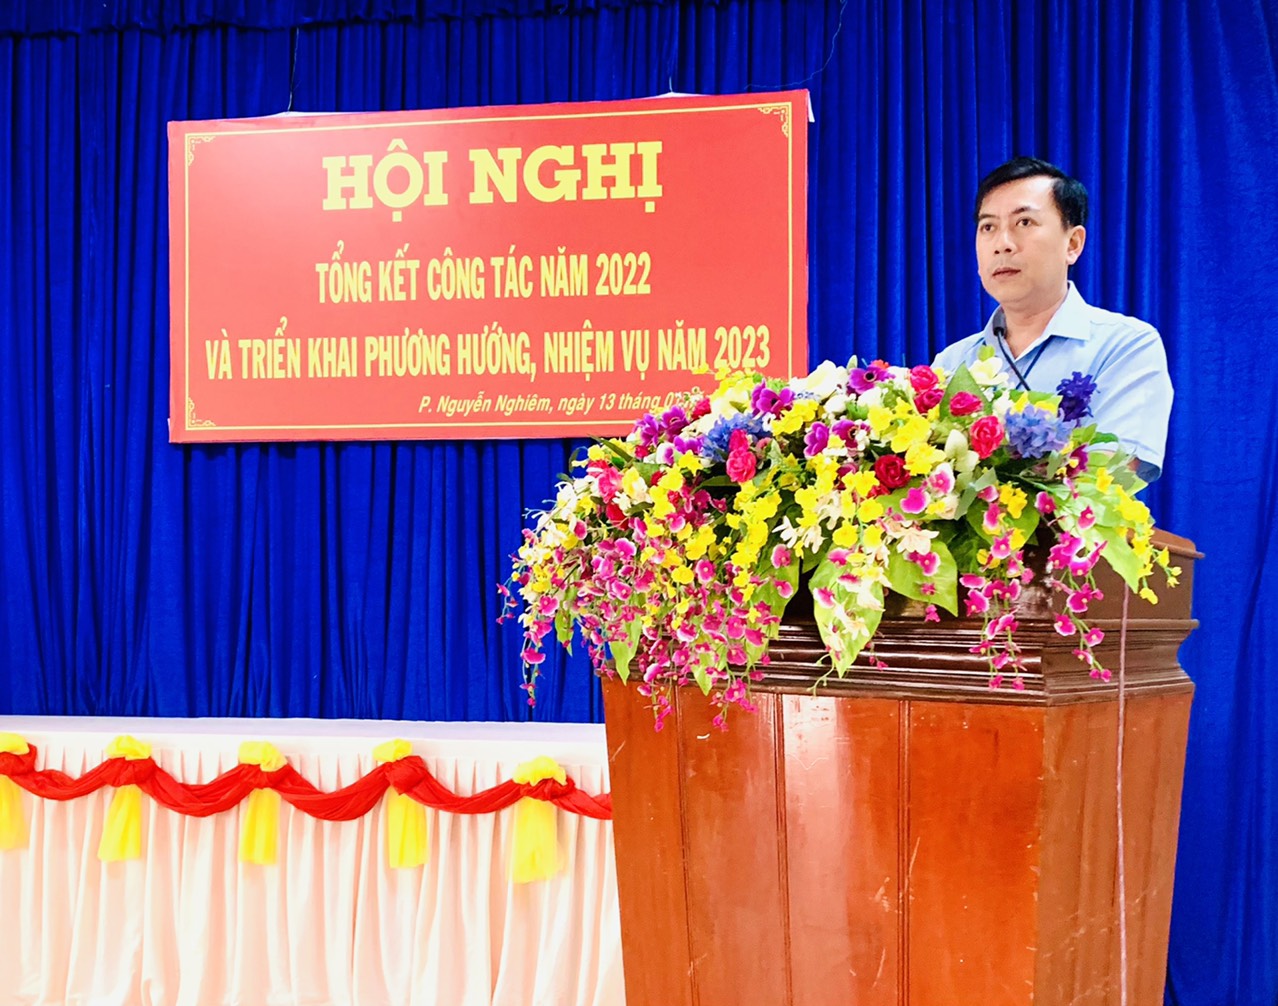 UBND Phường Nguyễn Nghiêm tổng kết công tác năm 2022 và triển khai phương hướng, nhiệm vụ năm 2023